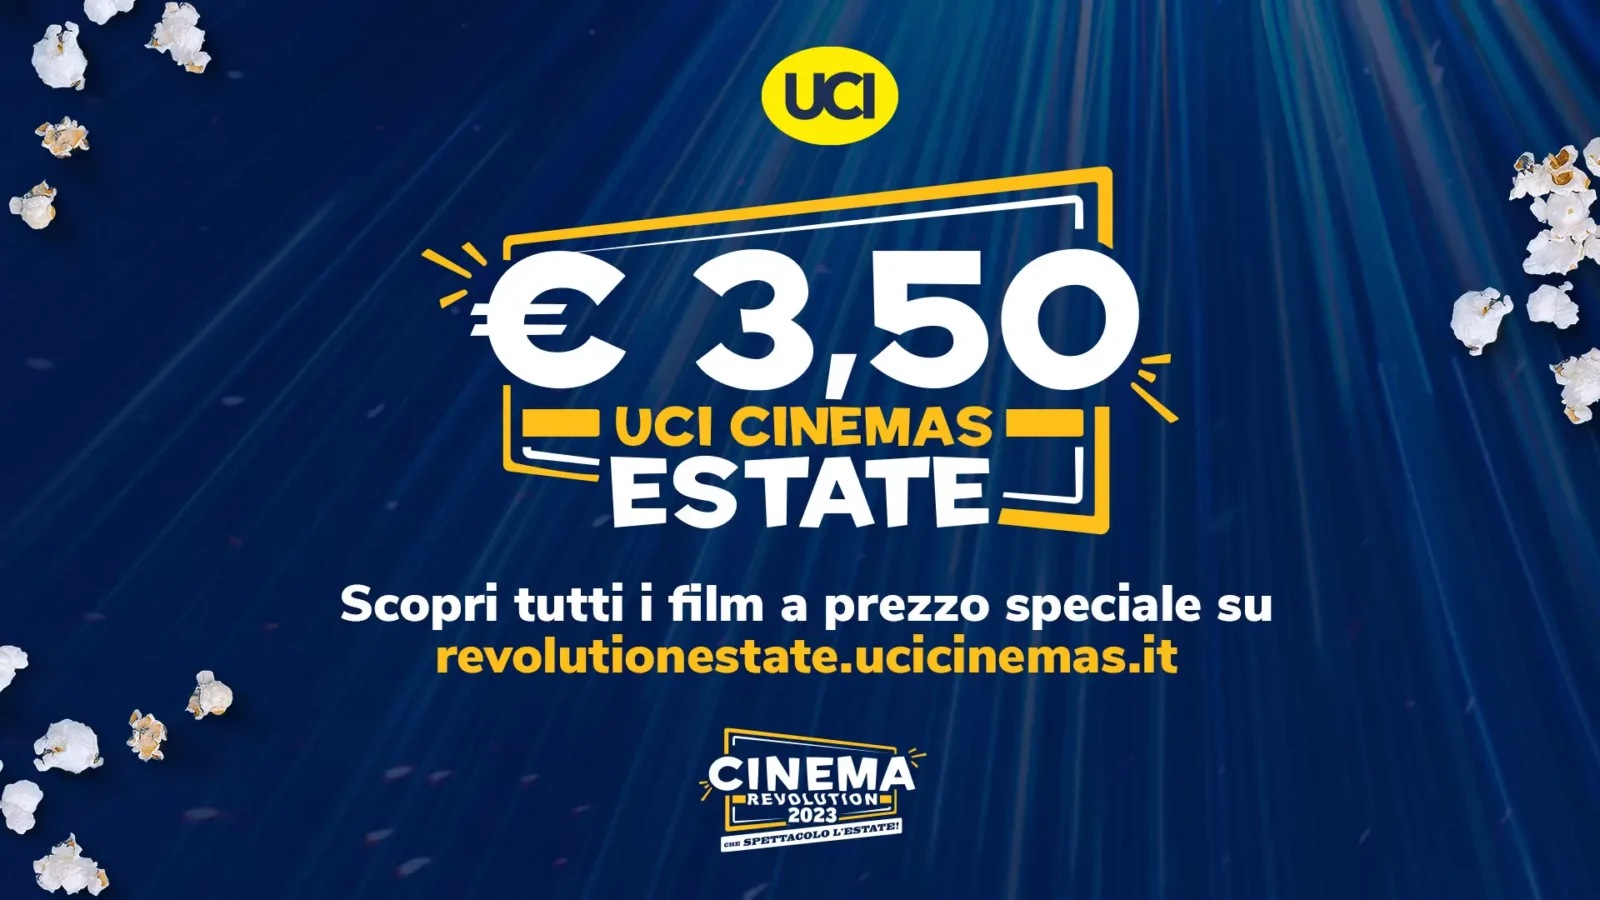 UCI Cinemas lancia Cinema Revolution con sconti sui biglietti